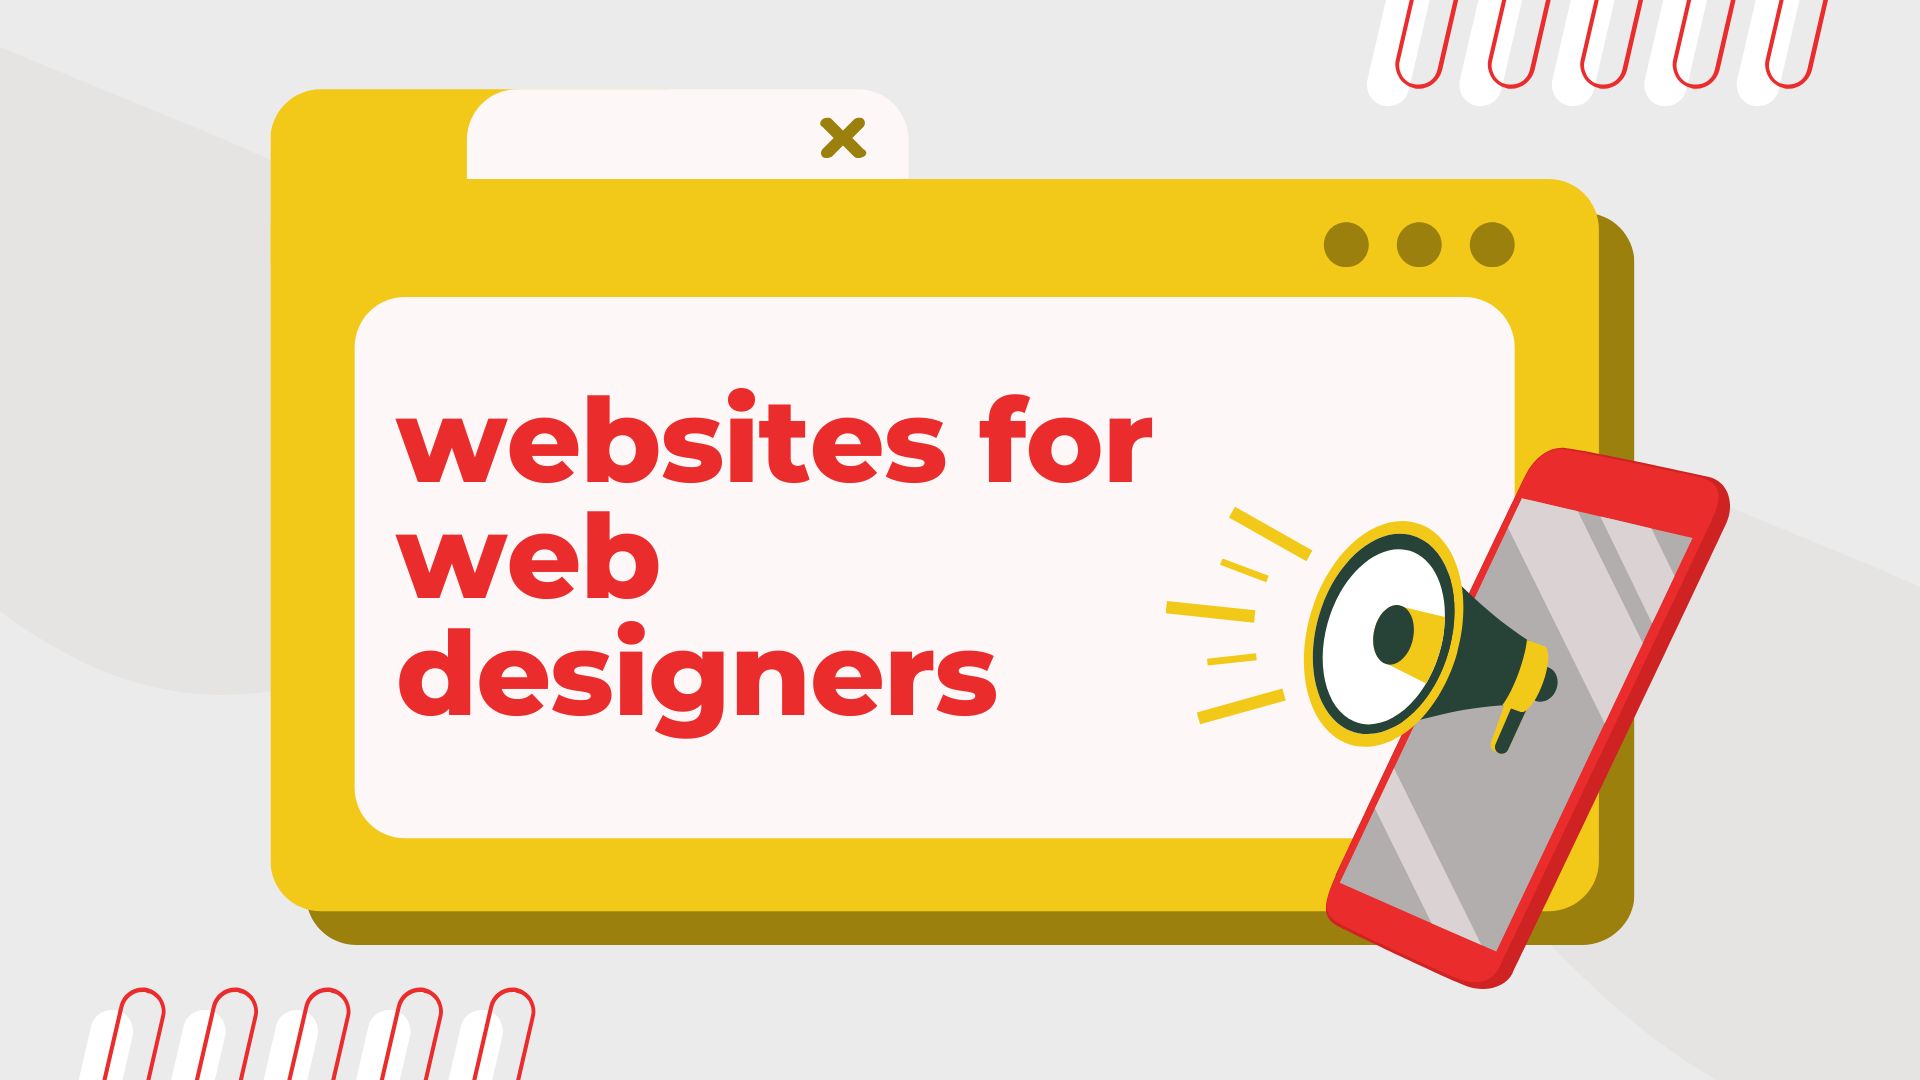 wesites for web designers - be unique